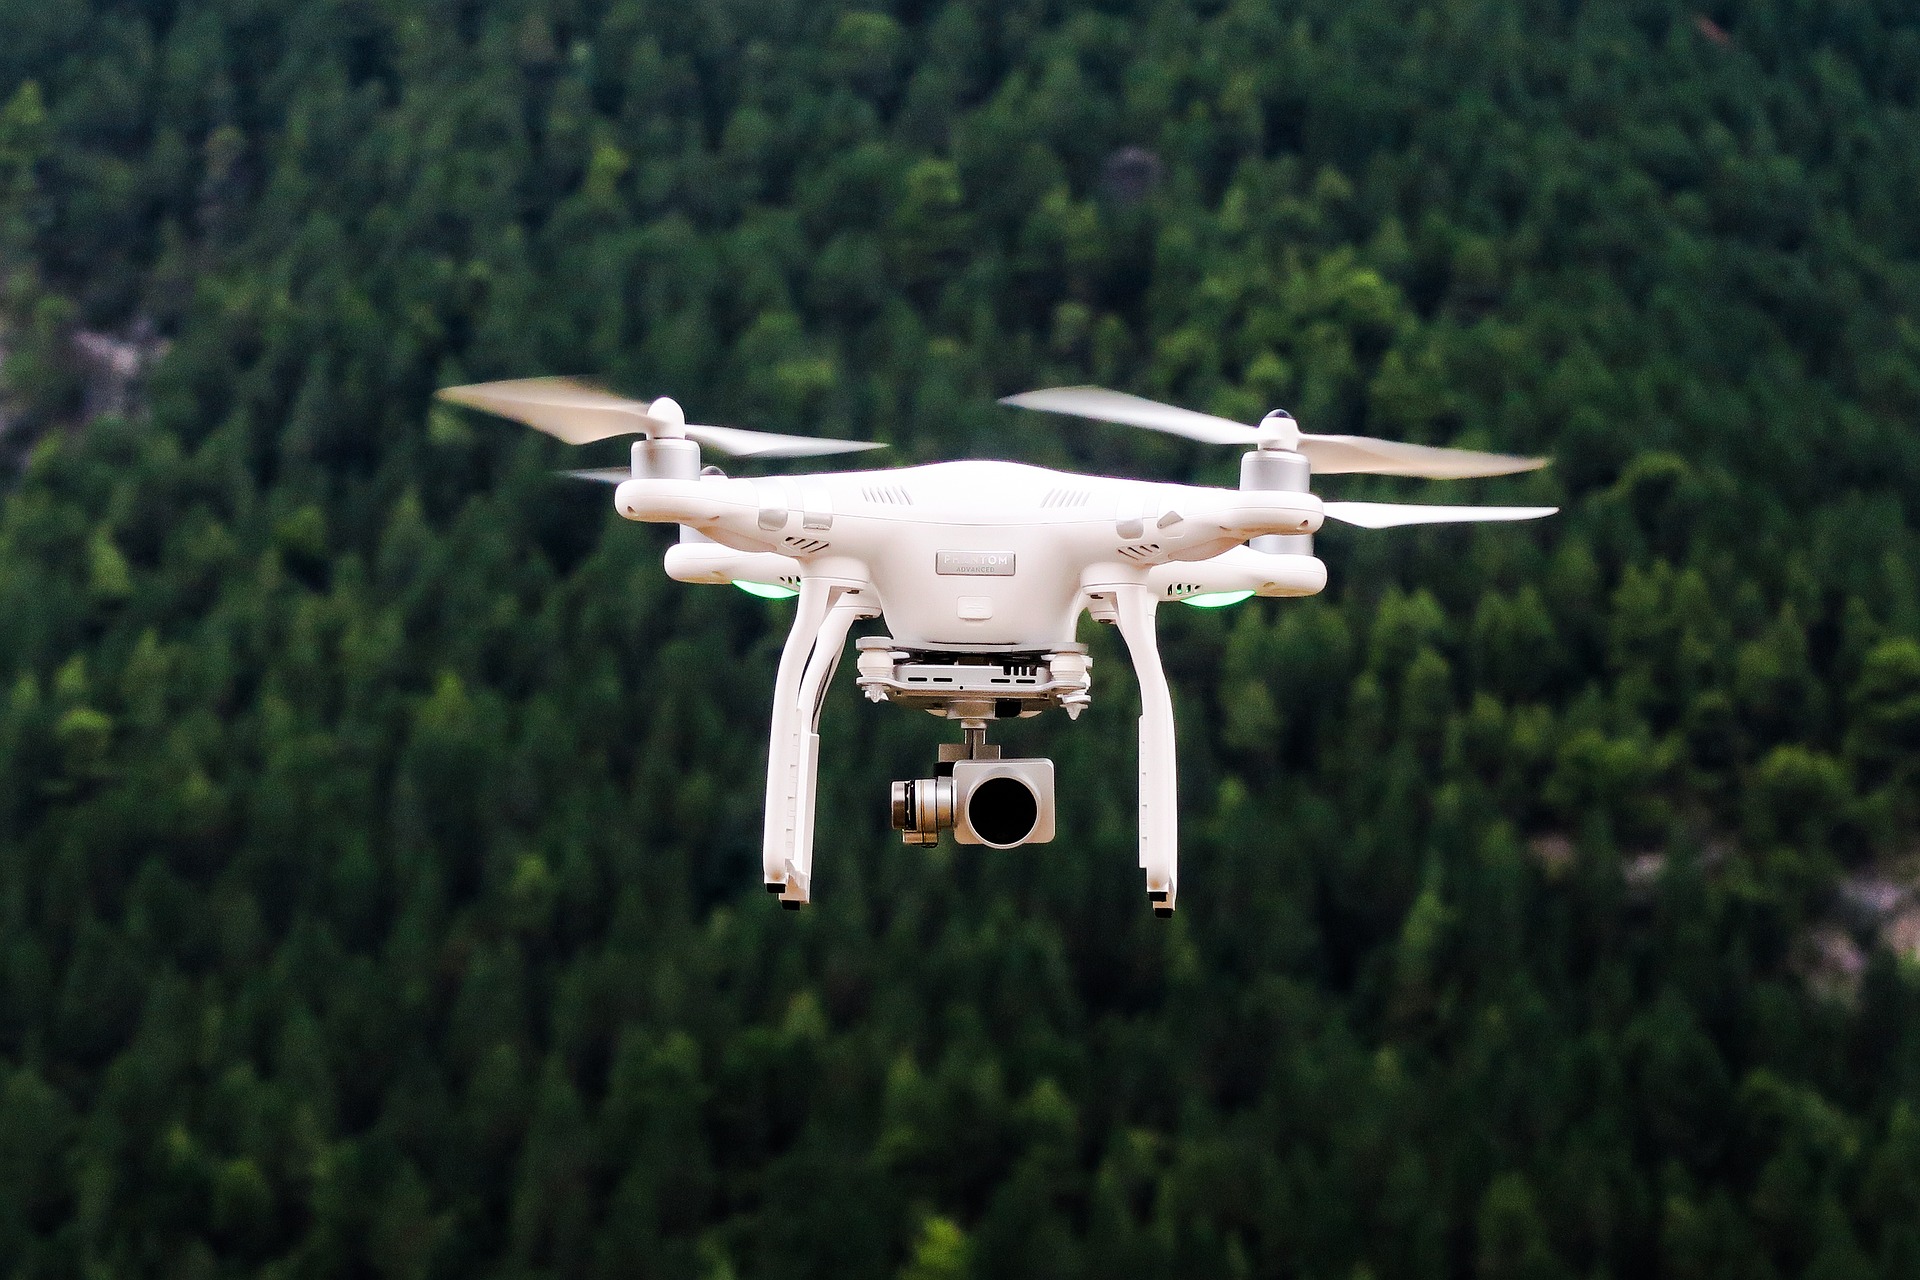 ΕΒΕΠ: Σχέδιο χρήσης drones για εμπορική χρήση στον Πειραιά